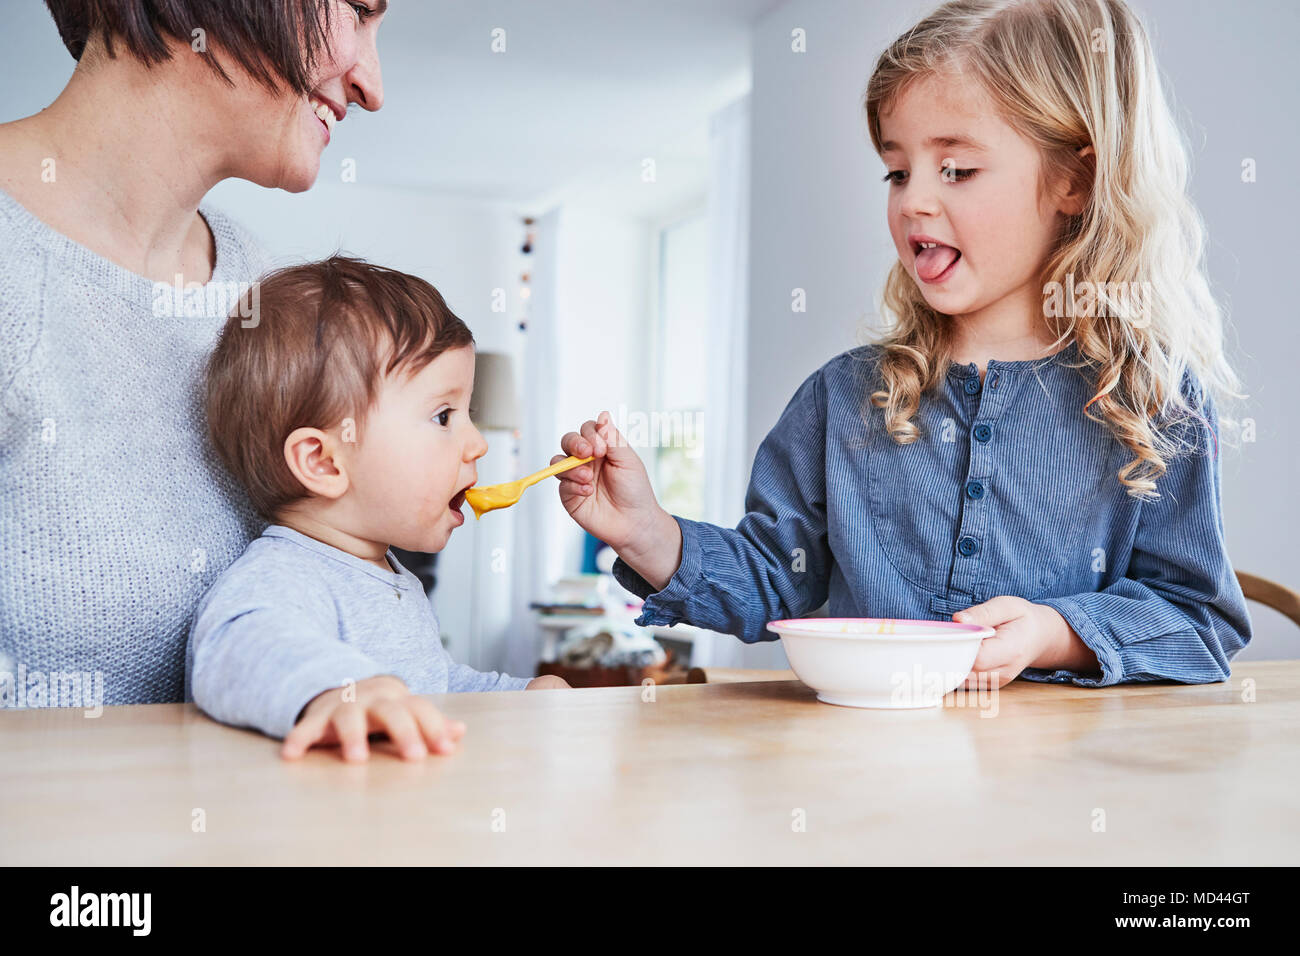 Familie am Küchentisch sitzen, junges Mädchen spoon-feeding baby Schwester Stockfoto